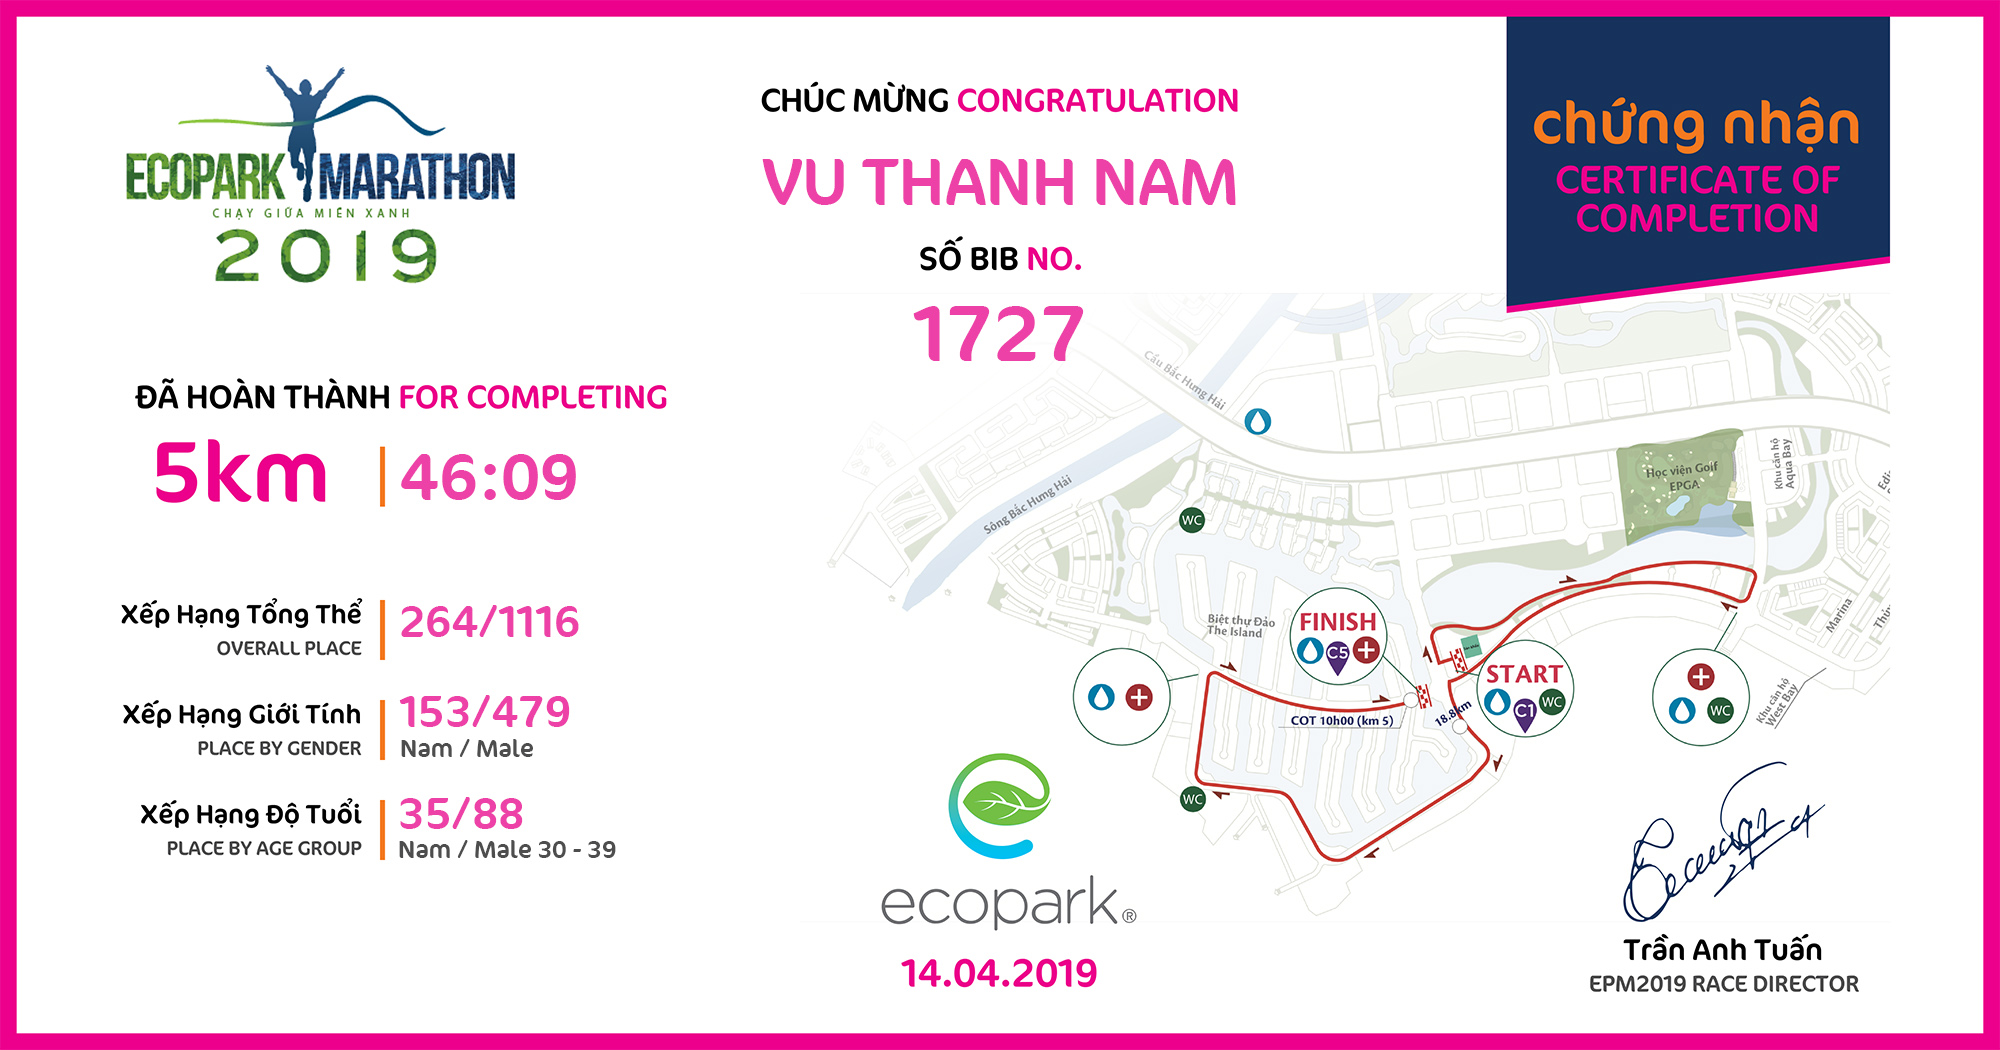 1727 - Vu Thanh Nam